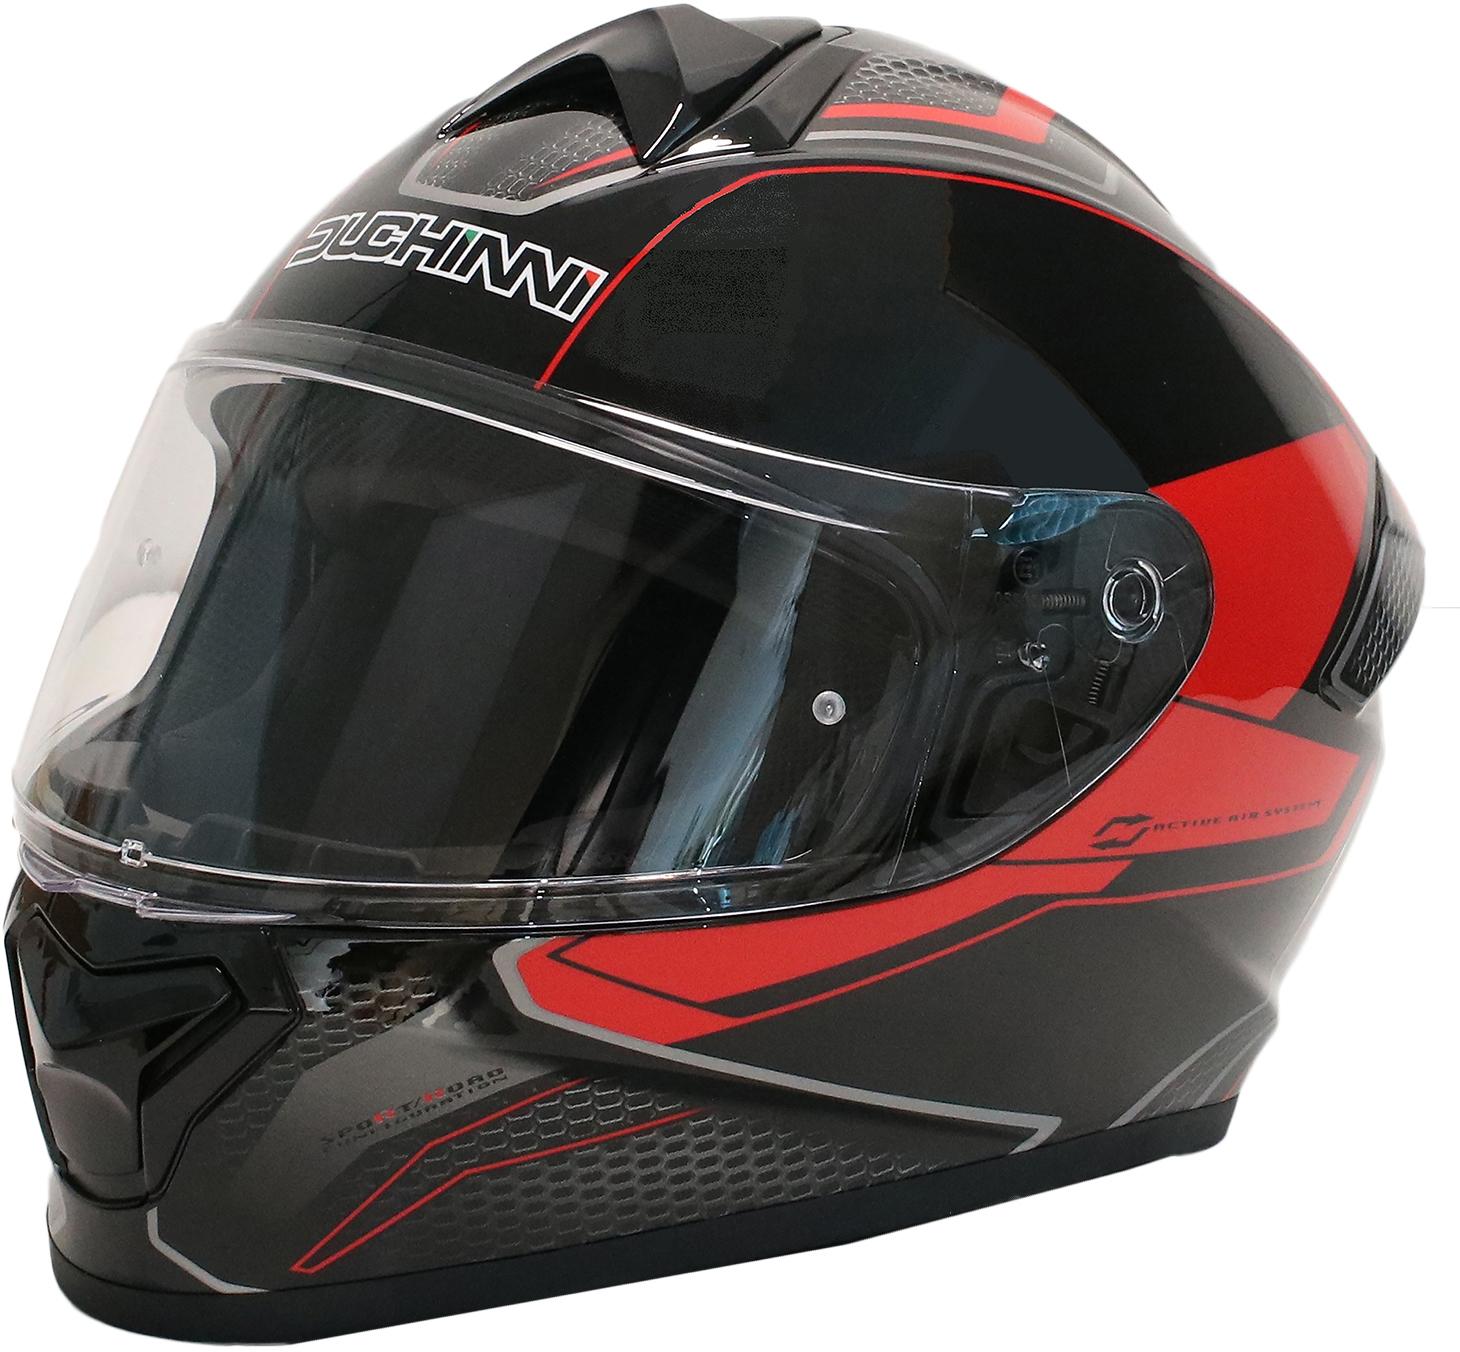 Duchinni Black/Red Helmet D977 M